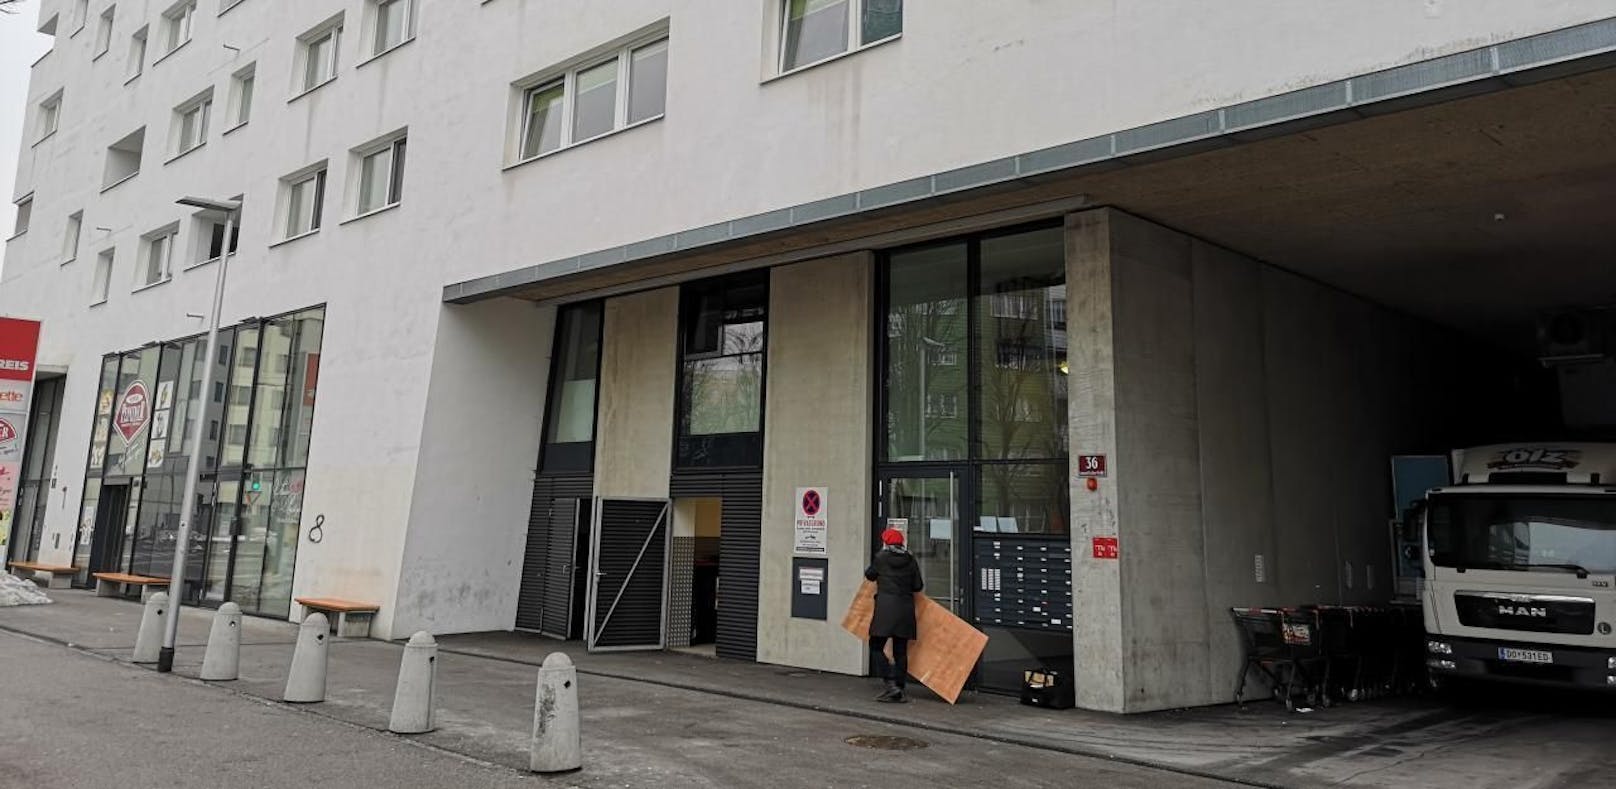 Der Vorfall ereignete sich in einer Wohnung in Innsbruck